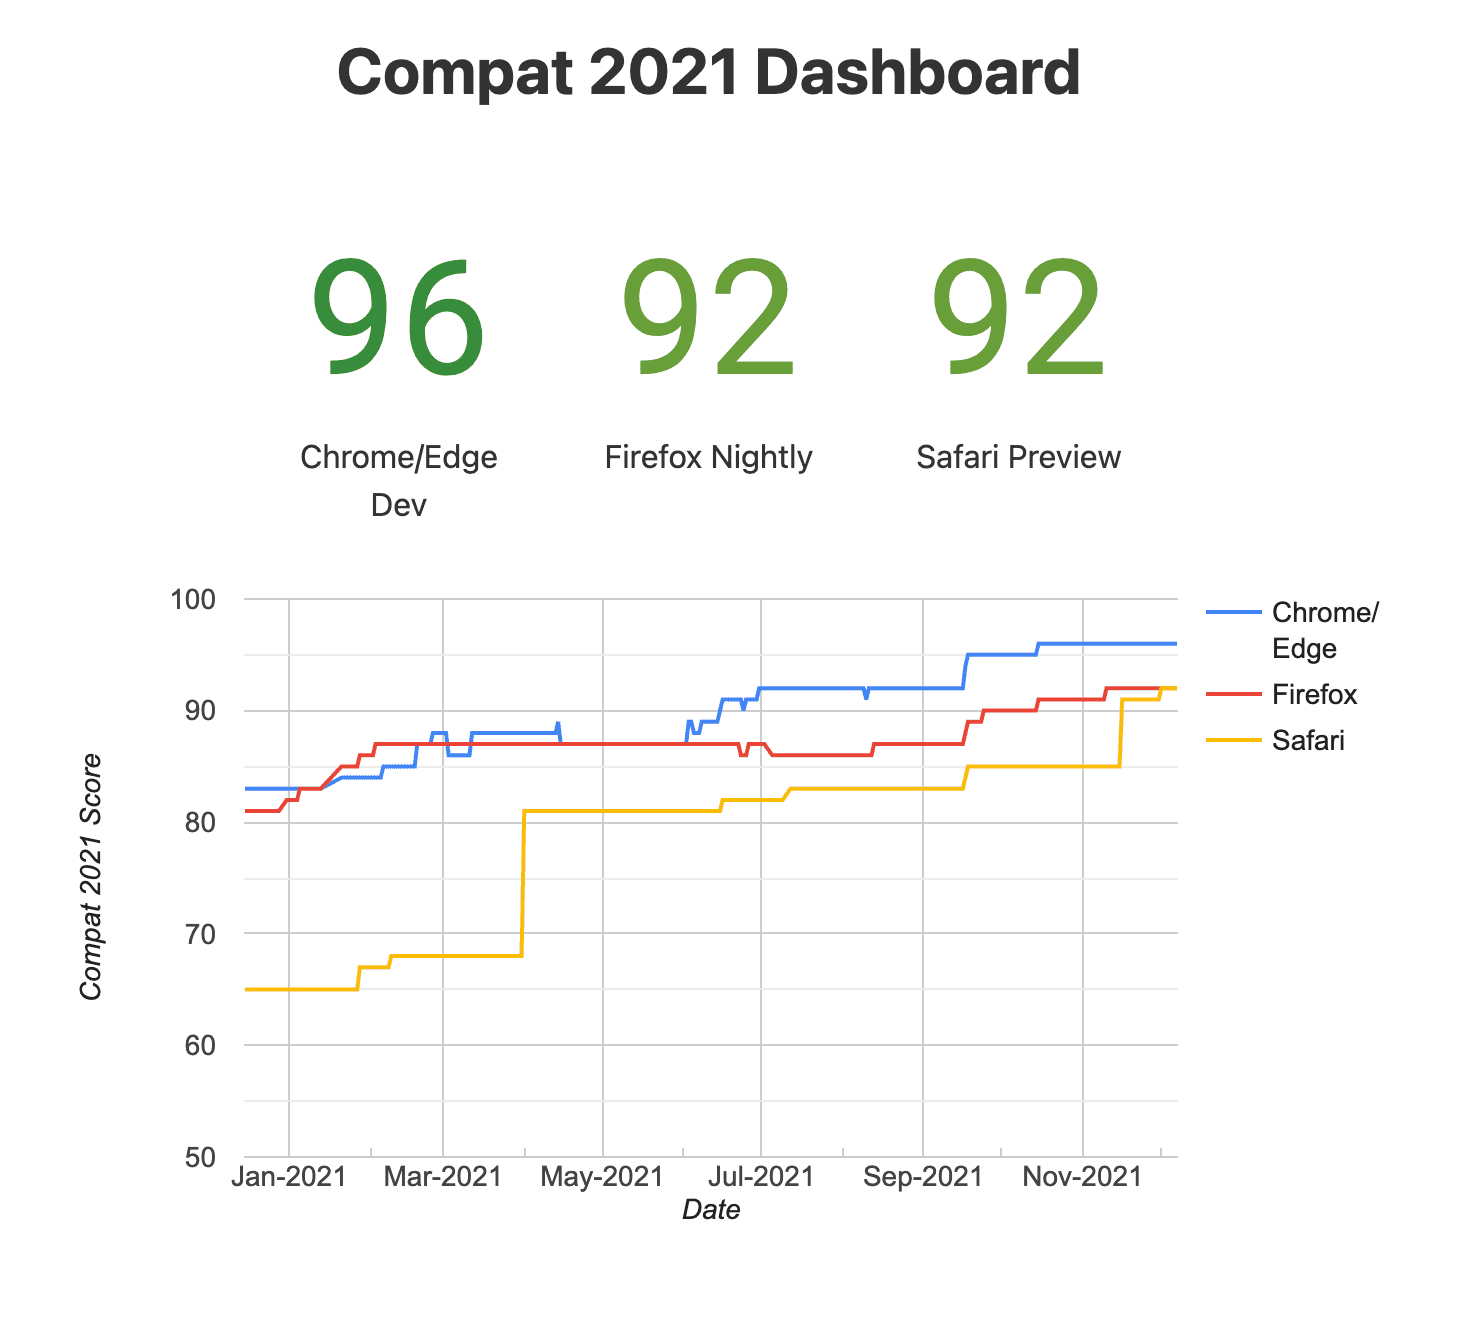 תמונת מצב של מרכז הבקרה
ל-2021 של Compat (דפדפנים ניסיוניים)